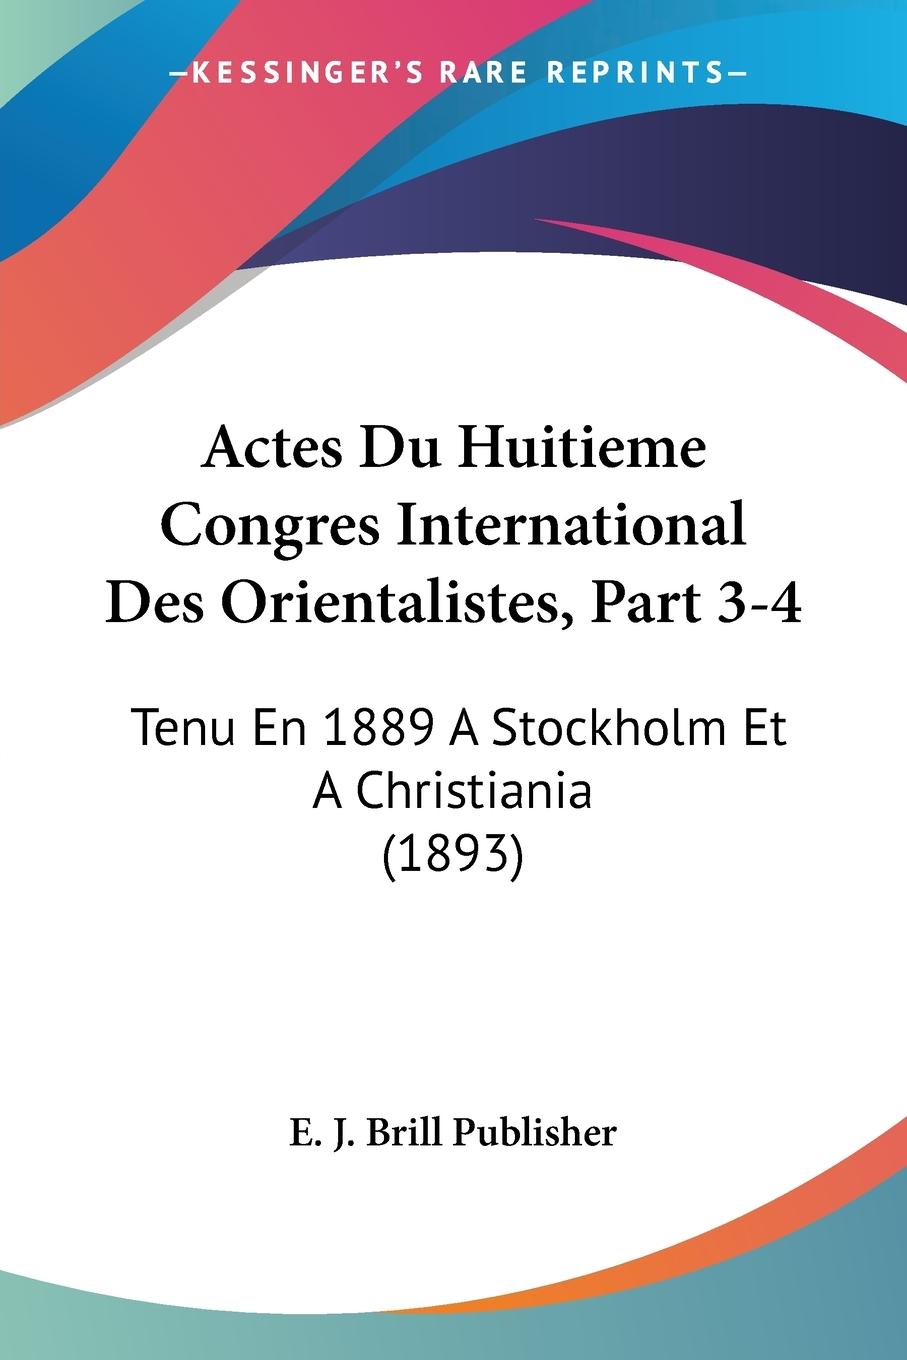 Actes Du Huitieme Congres International Des Orientalistes, Part 3-4 - E. J. Brill Publisher